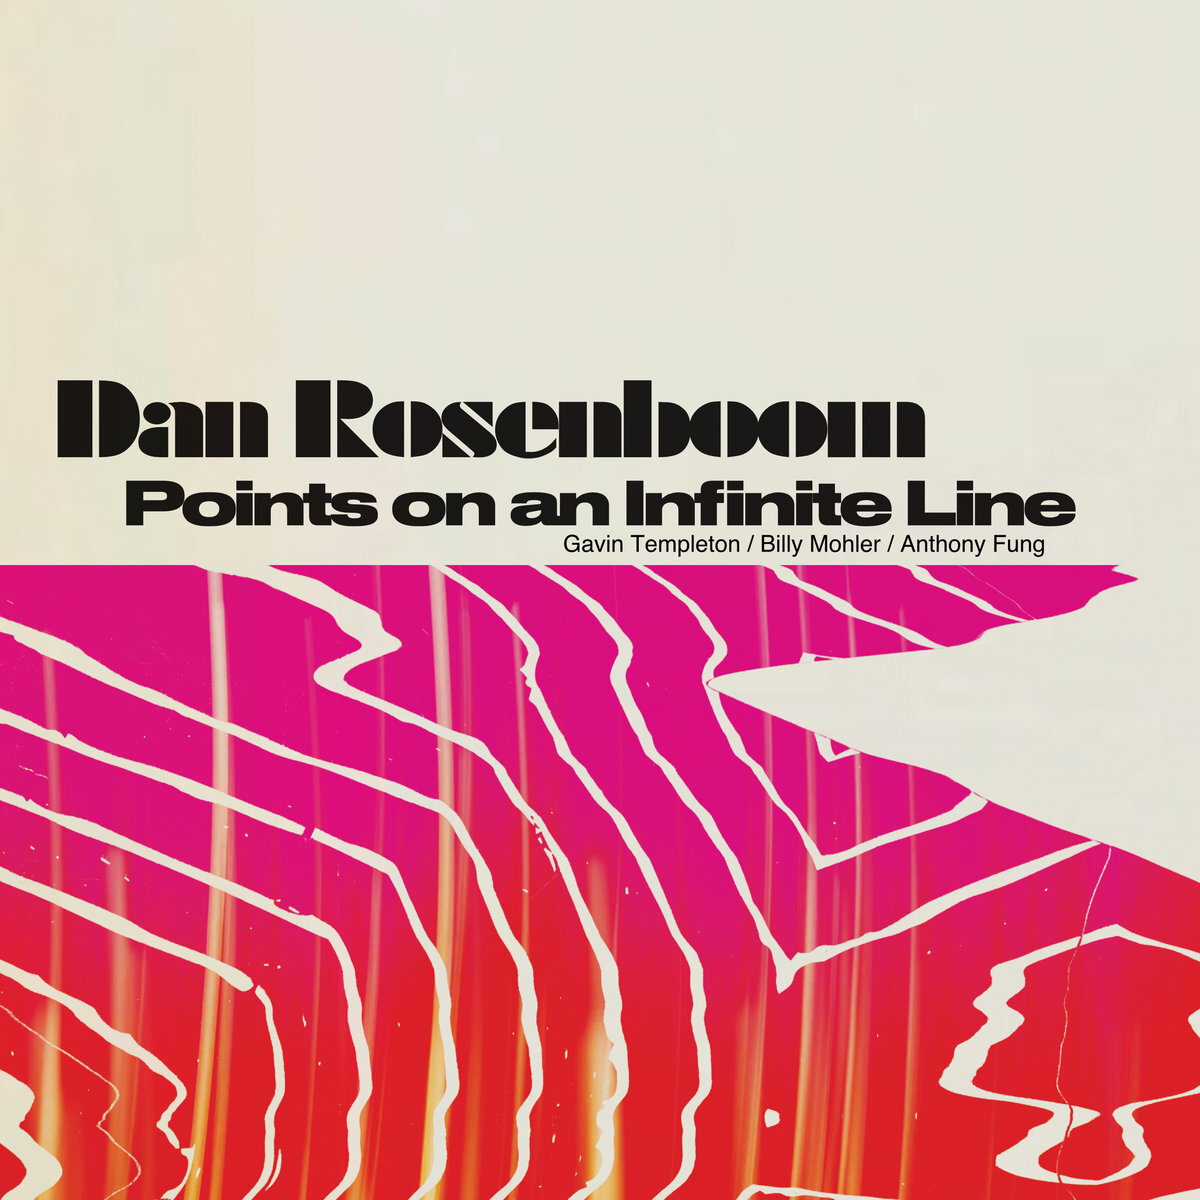 Dan Rosenboom // Points on an Infinite Line